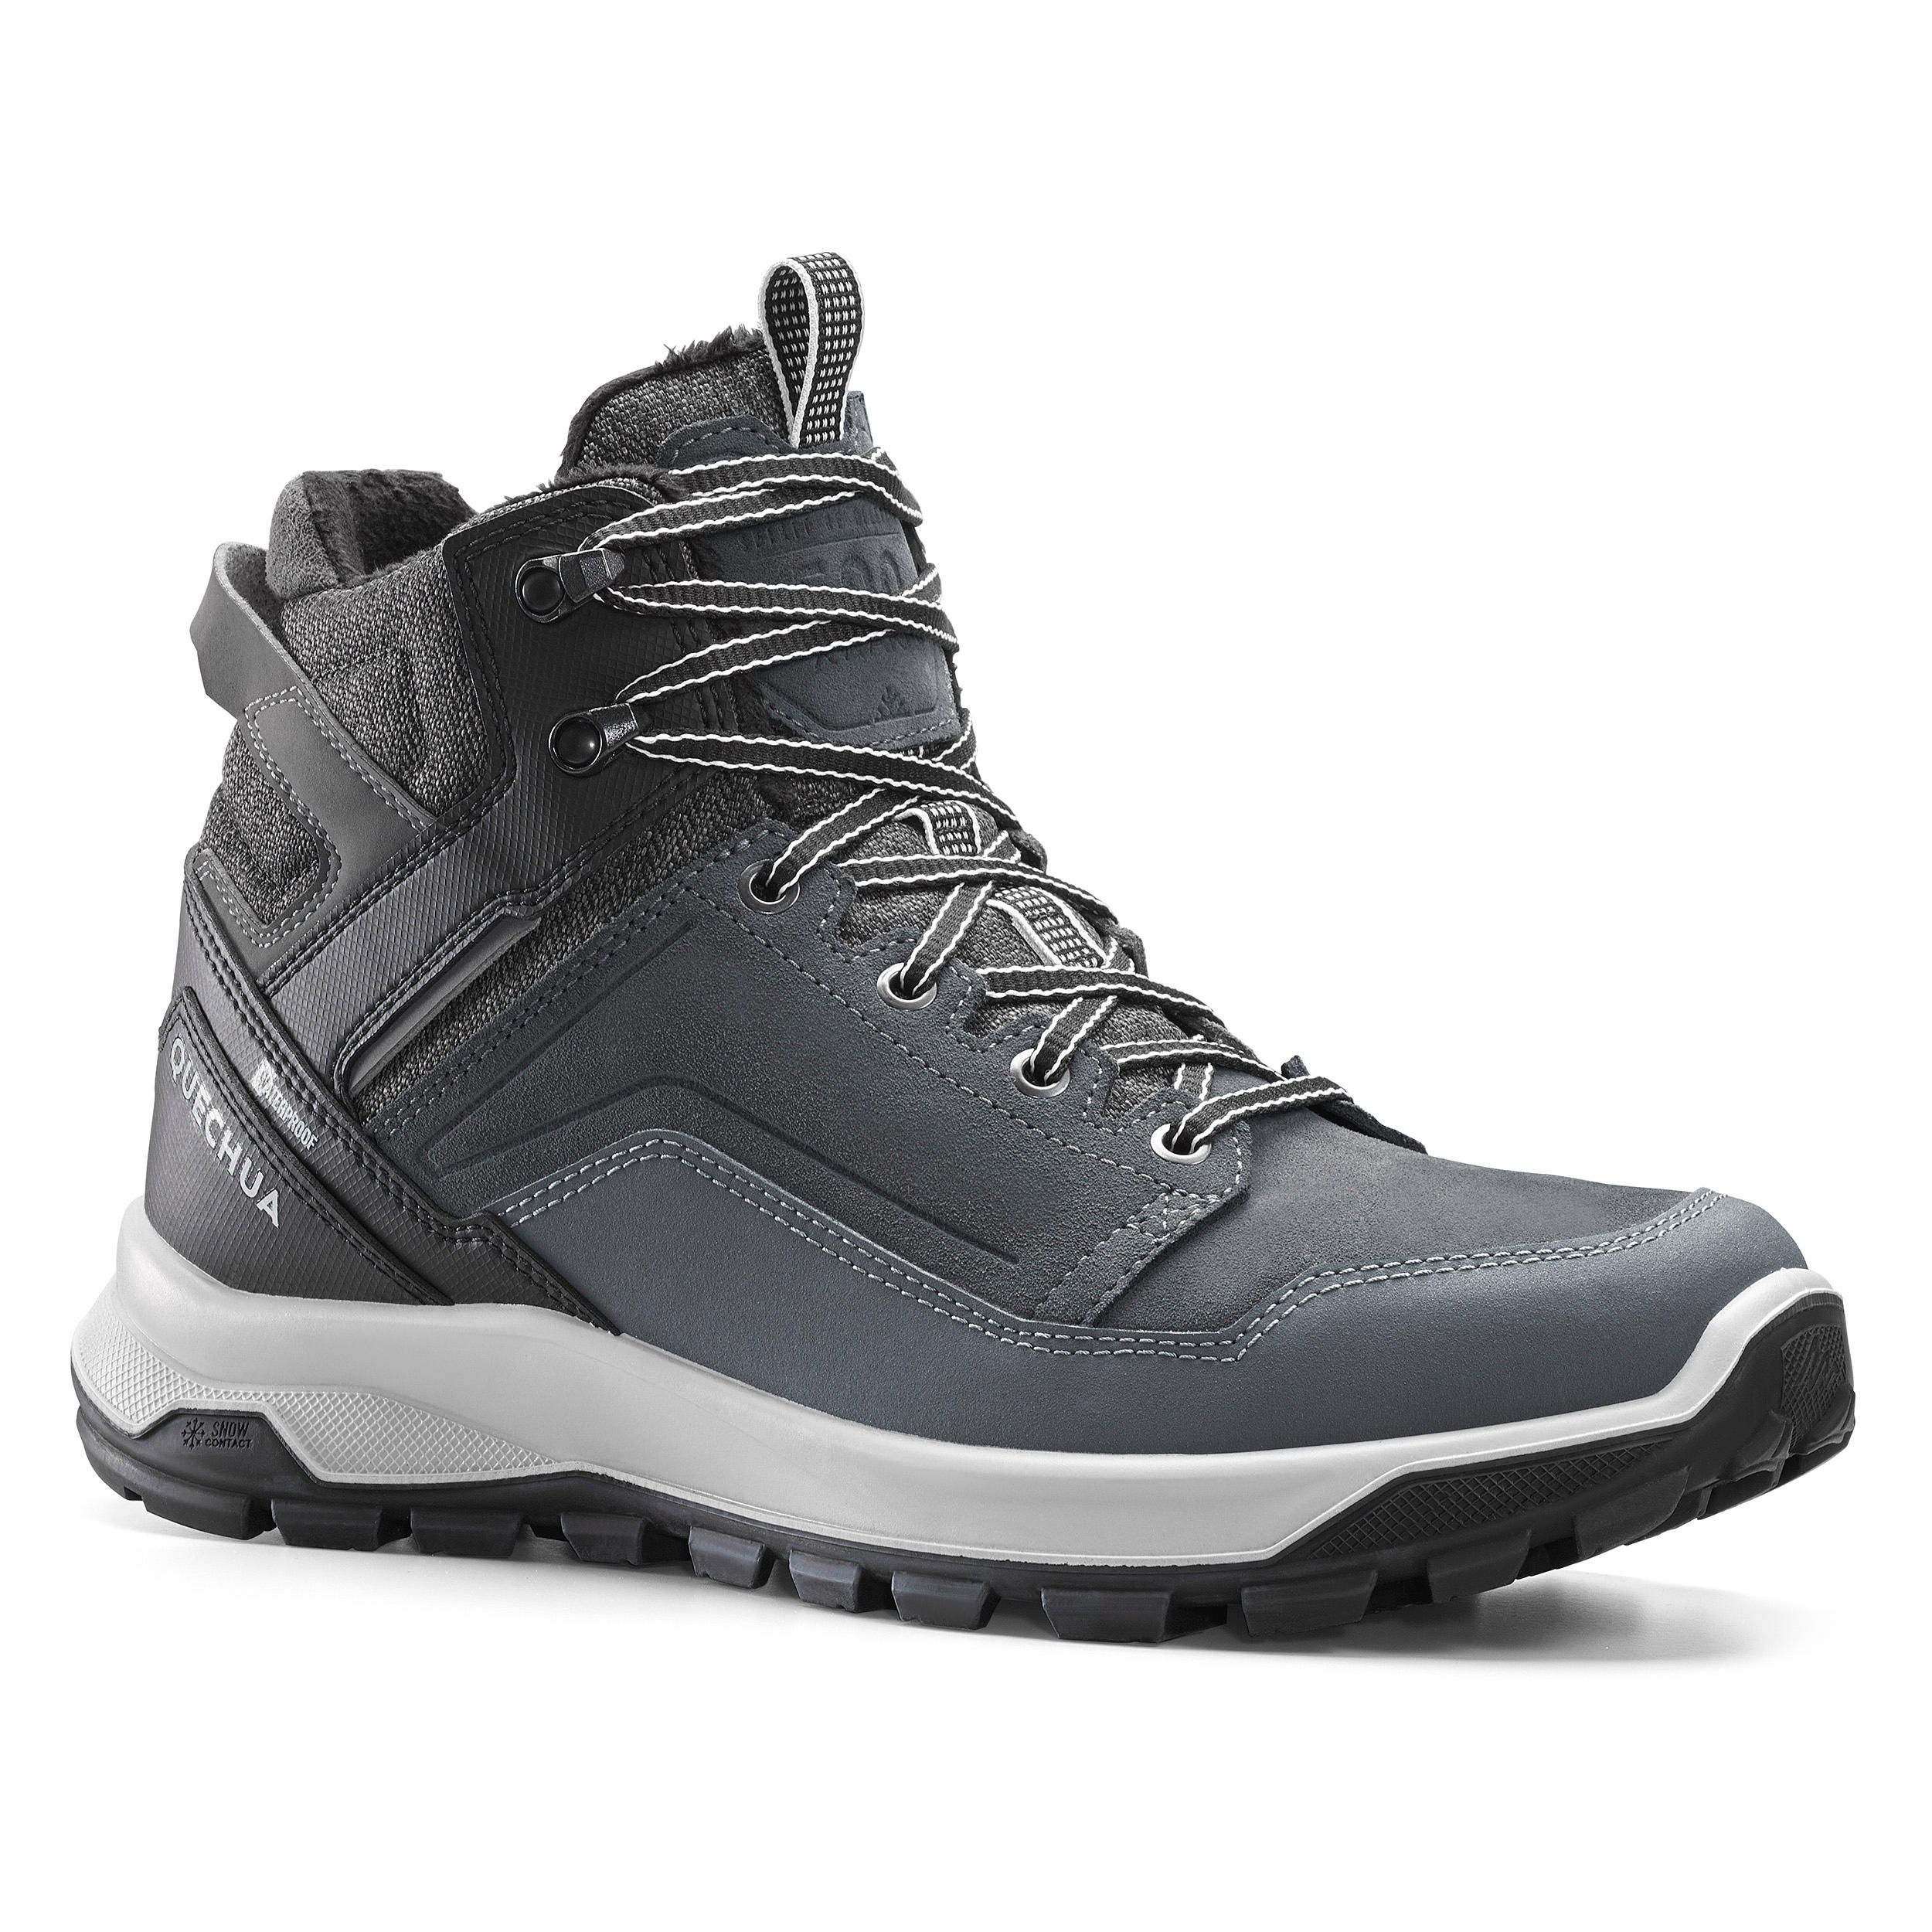 Men’s Waterproof Hiking Boots - X-Warm SH 500 Grey - QUECHUA